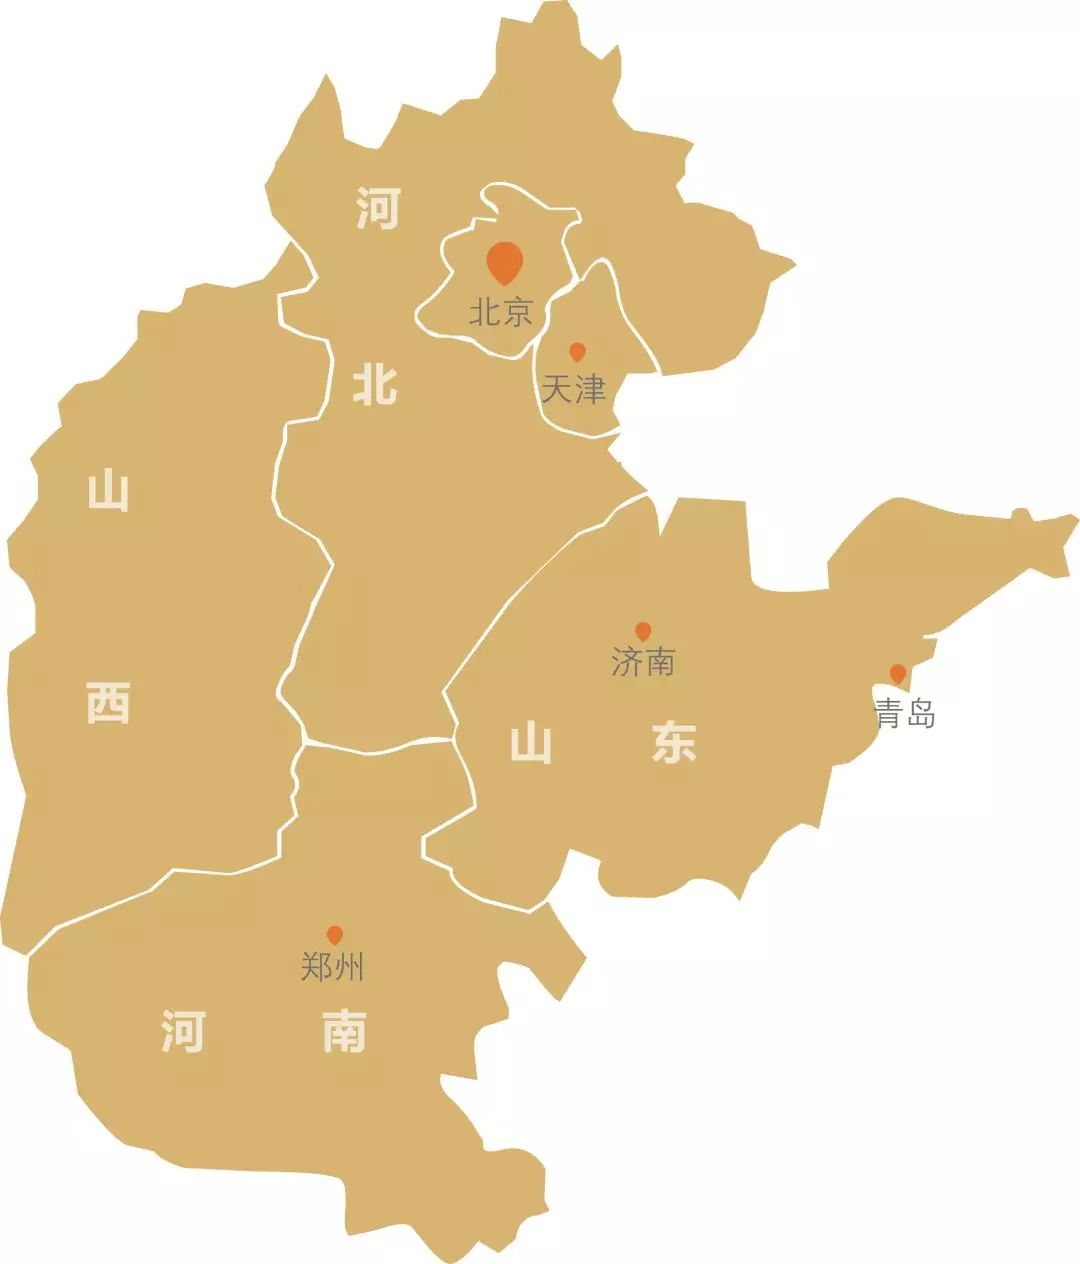 华北地区范围图片